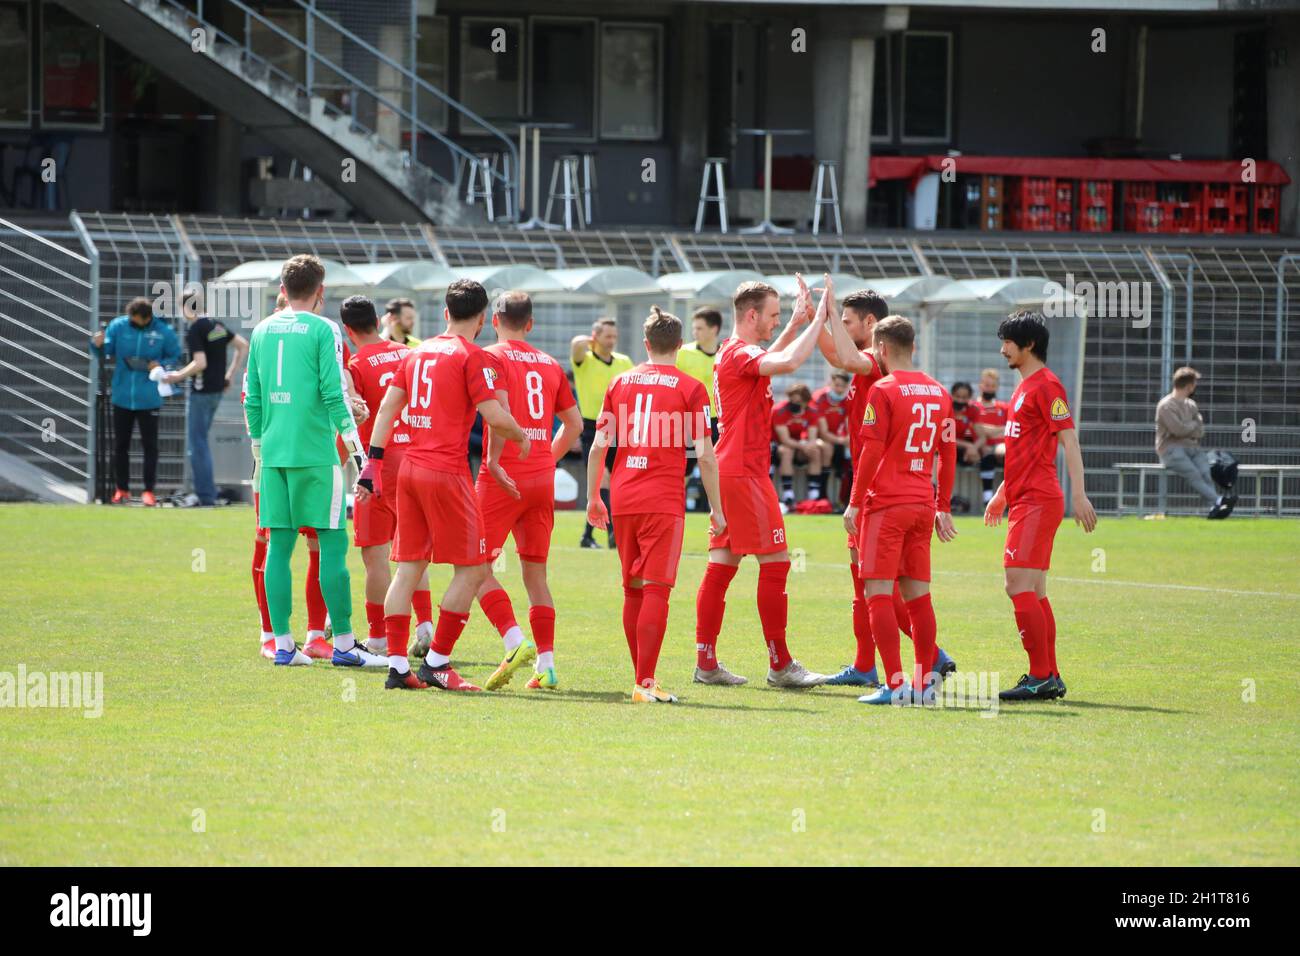 Zuversicht vor dem Spiel: Die Spieler des TSV Steinbach Haiger schwören sich auf das Spiel ein,    Fussball-RL SW 20-21: 31. Sptg: SC Freiburg II - TS Stock Photo